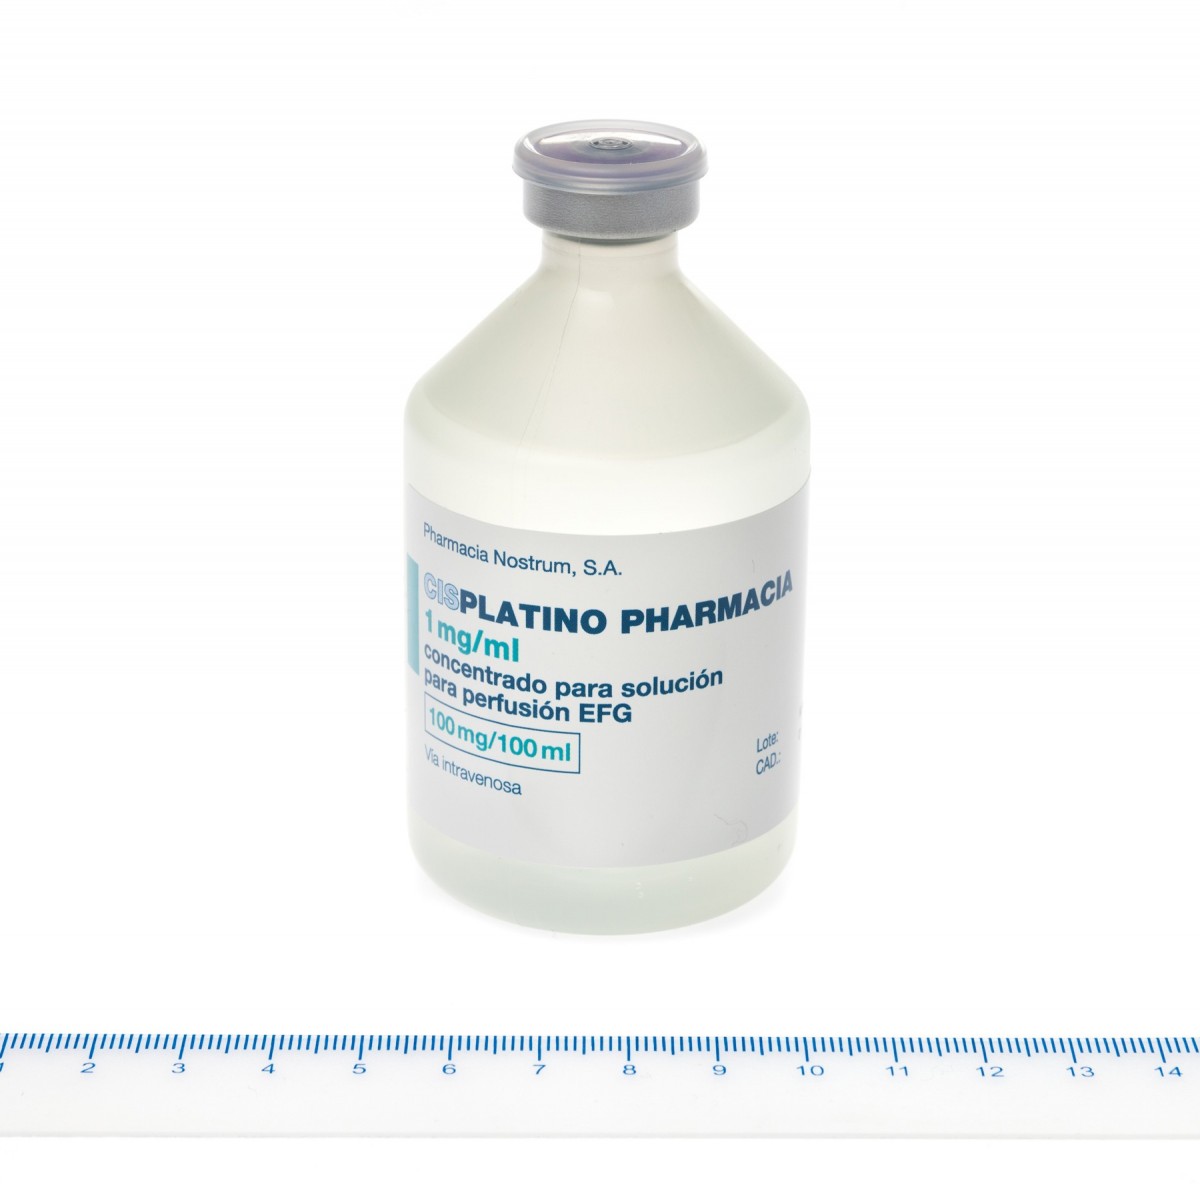 CISPLATINO PHARMACIA 1 mg/ml CONCENTRADO PARA SOLUCION PARA PERFUSION EFG , 1 vial de 10 ml fotografía de la forma farmacéutica.